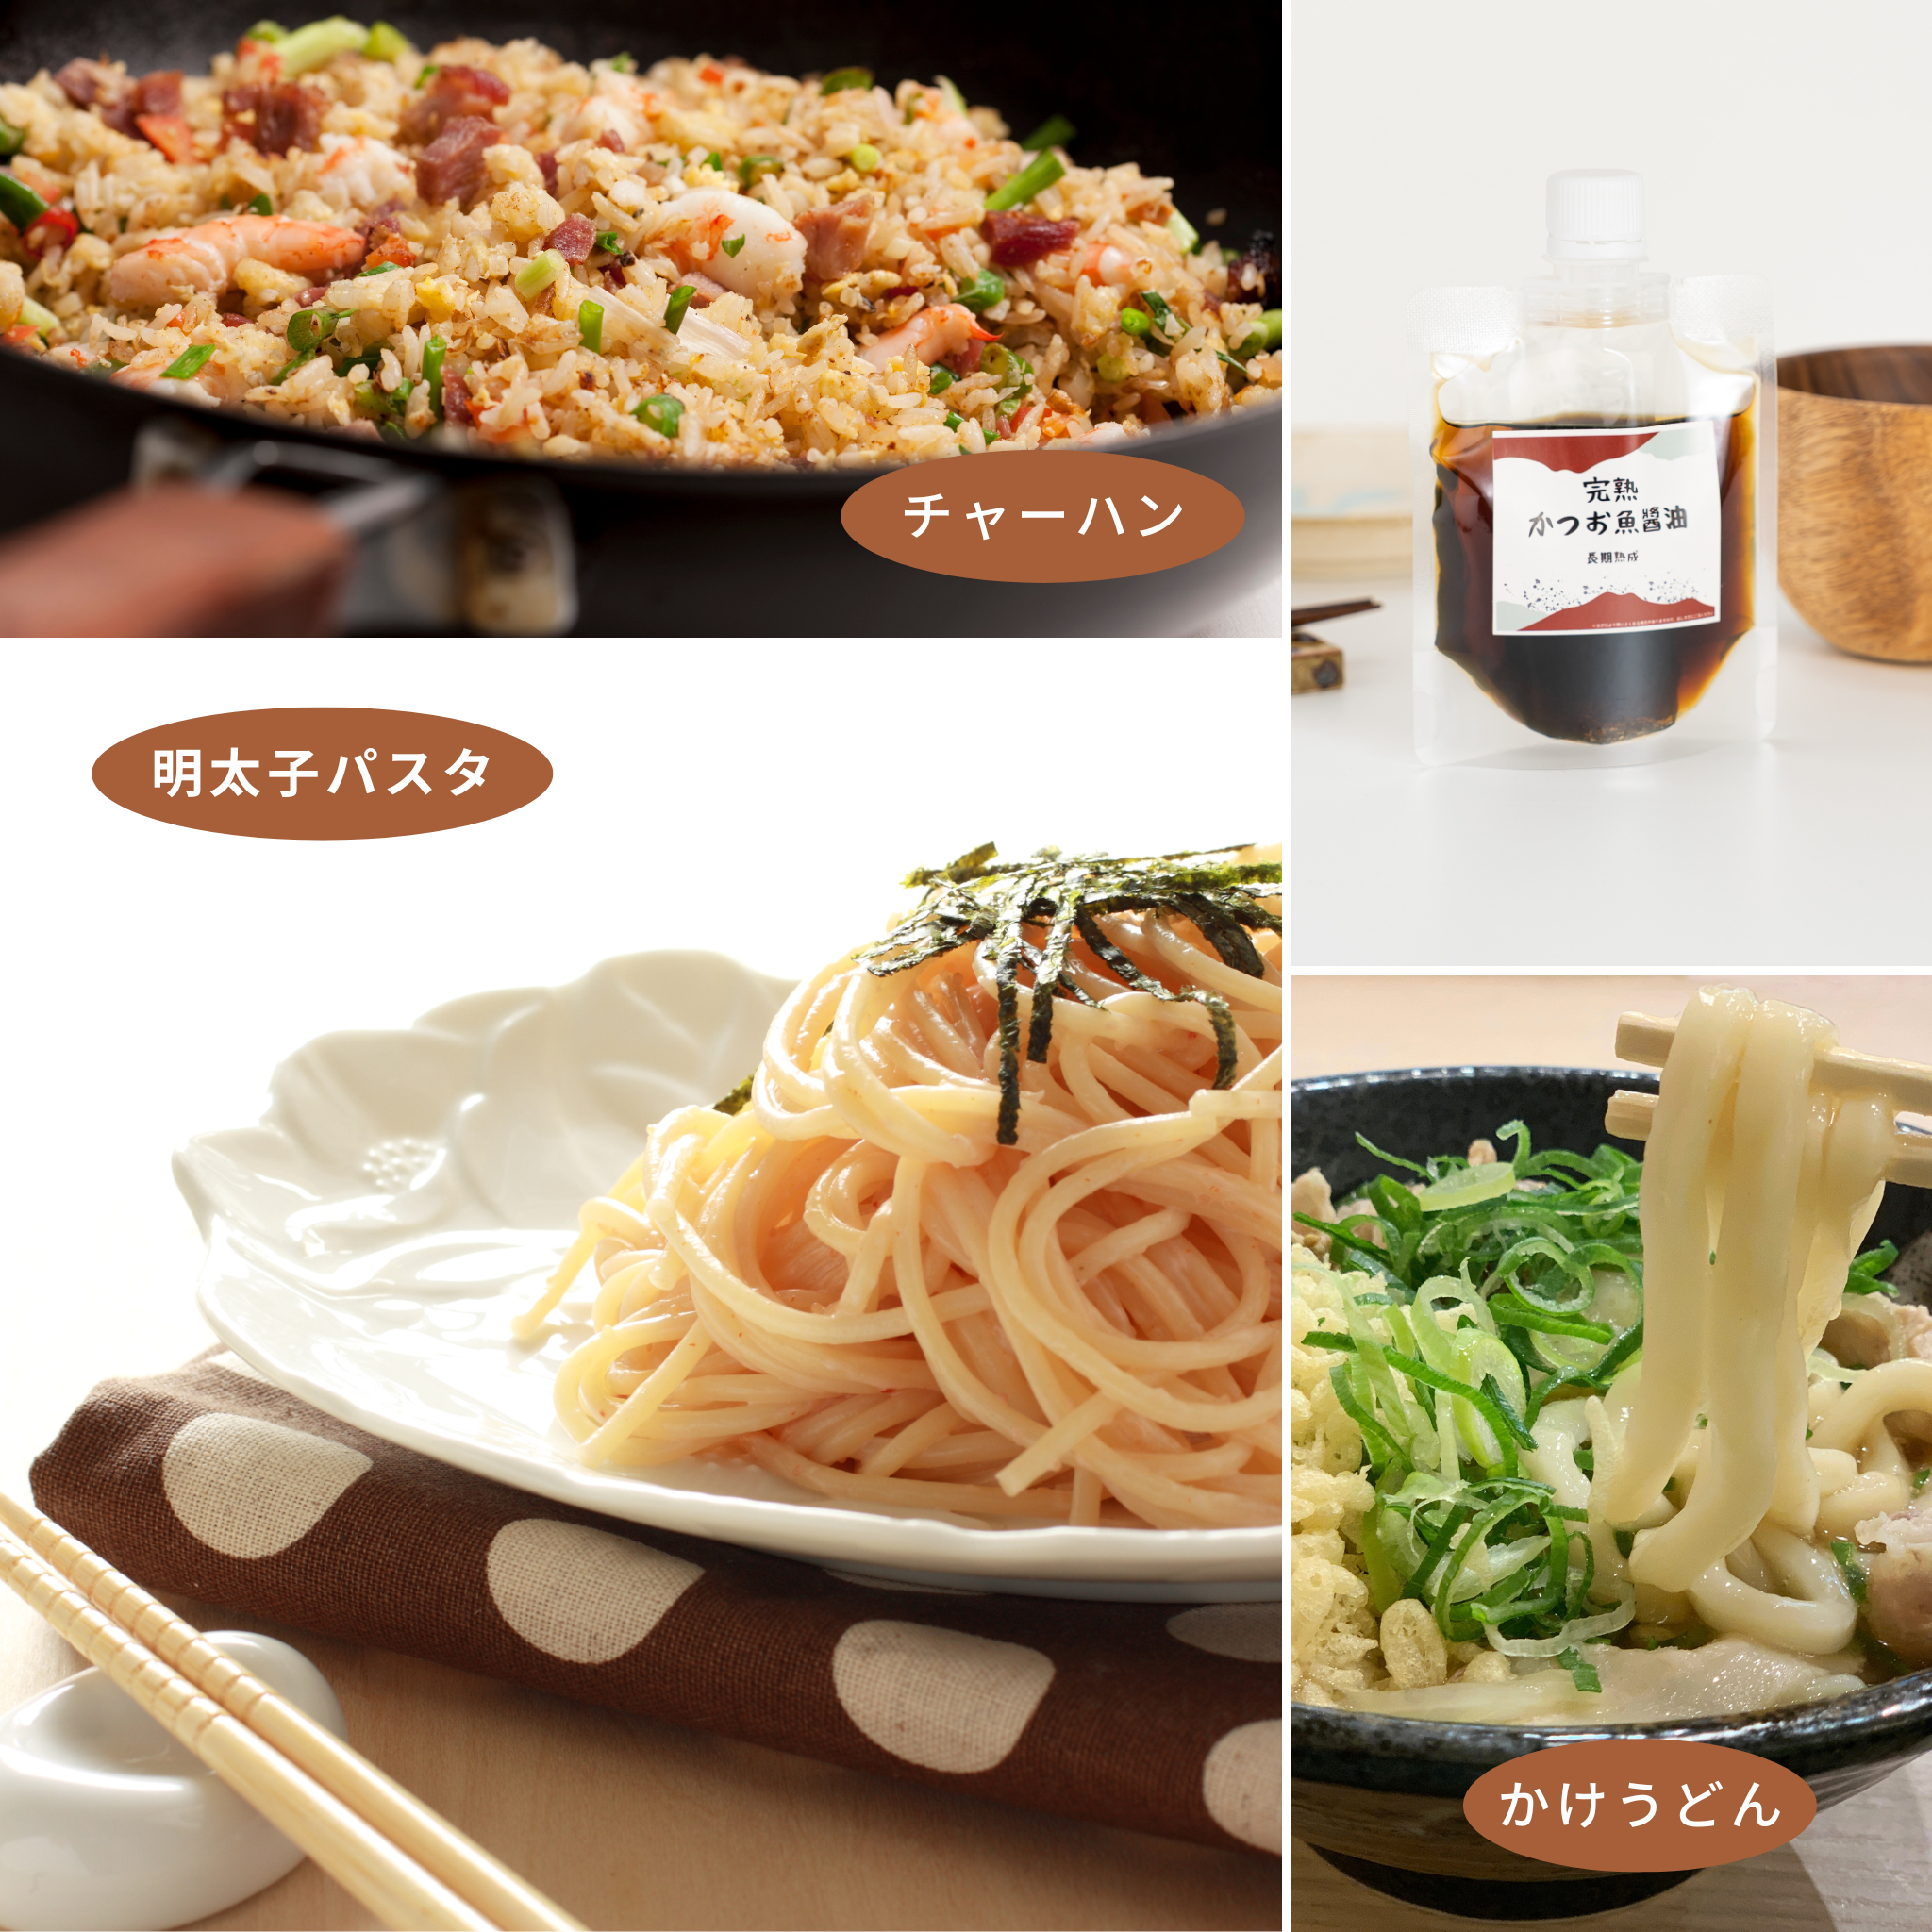 めんつゆでは物足りない時に和食の本格味付けバリエーションを手軽に広げる調味料セット